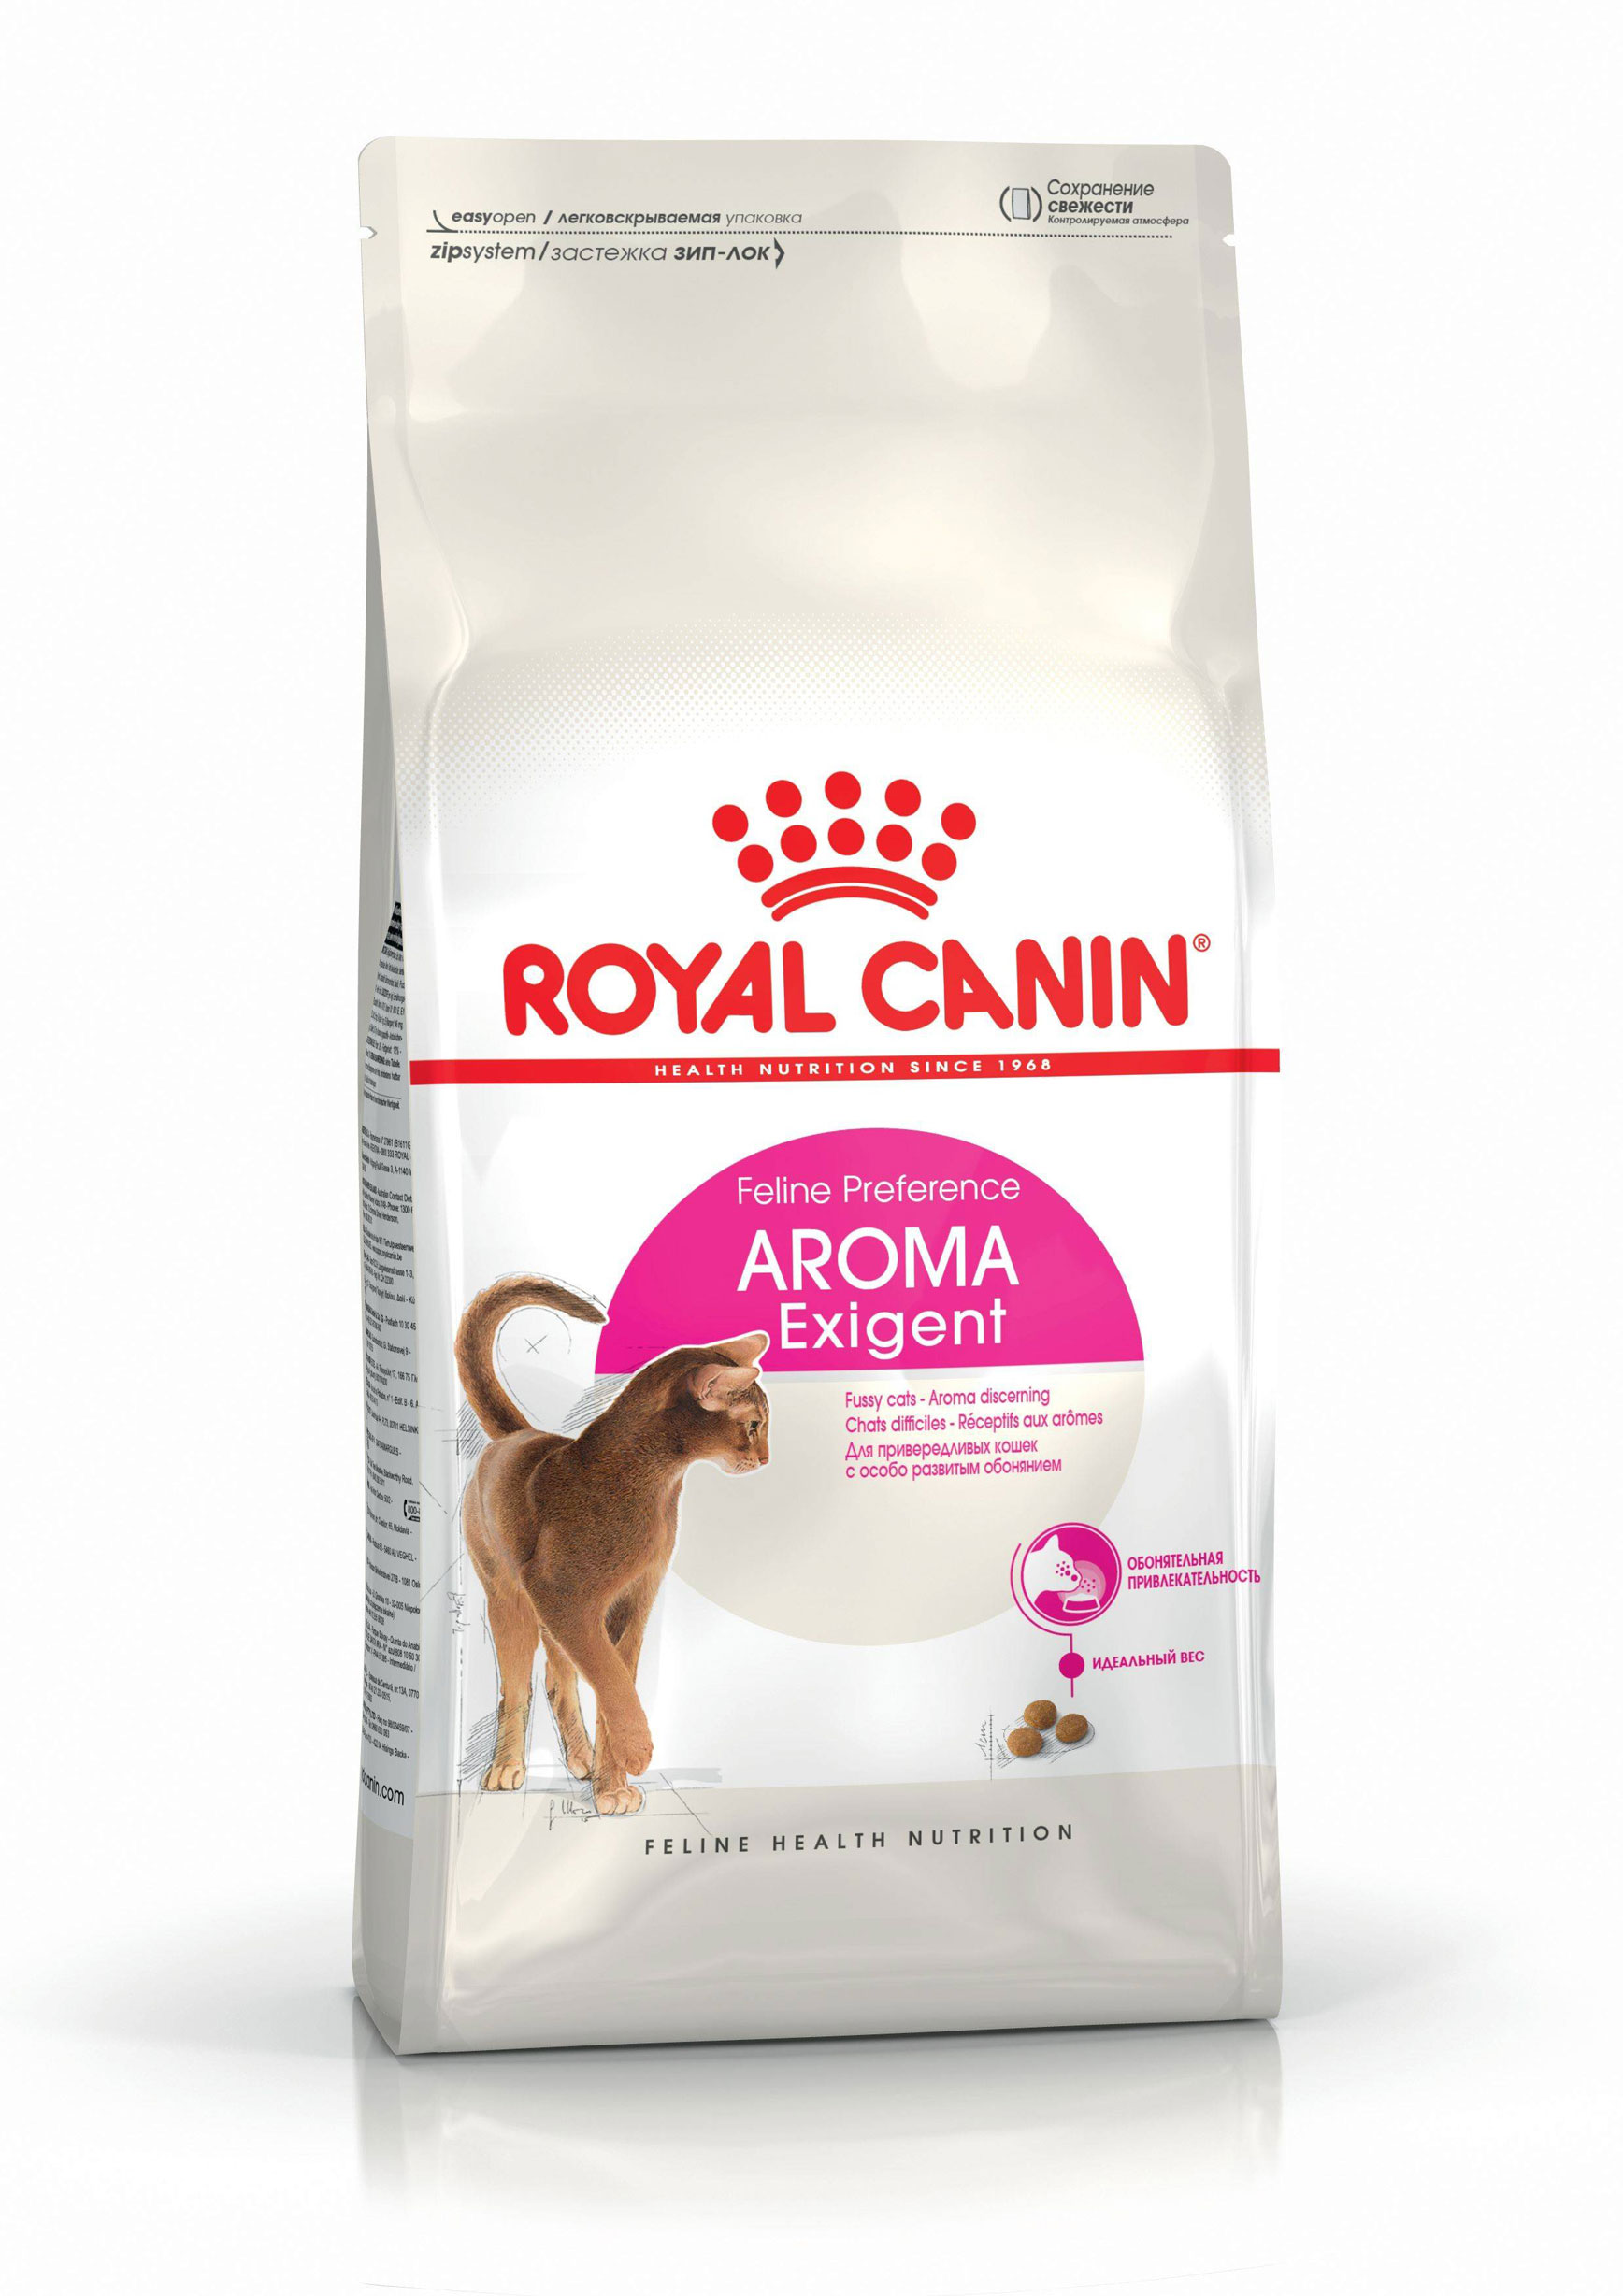 ROYAL CANIN AROMA EXIGENT – сухой корм для взрослых котов, привередливых к аромату корма